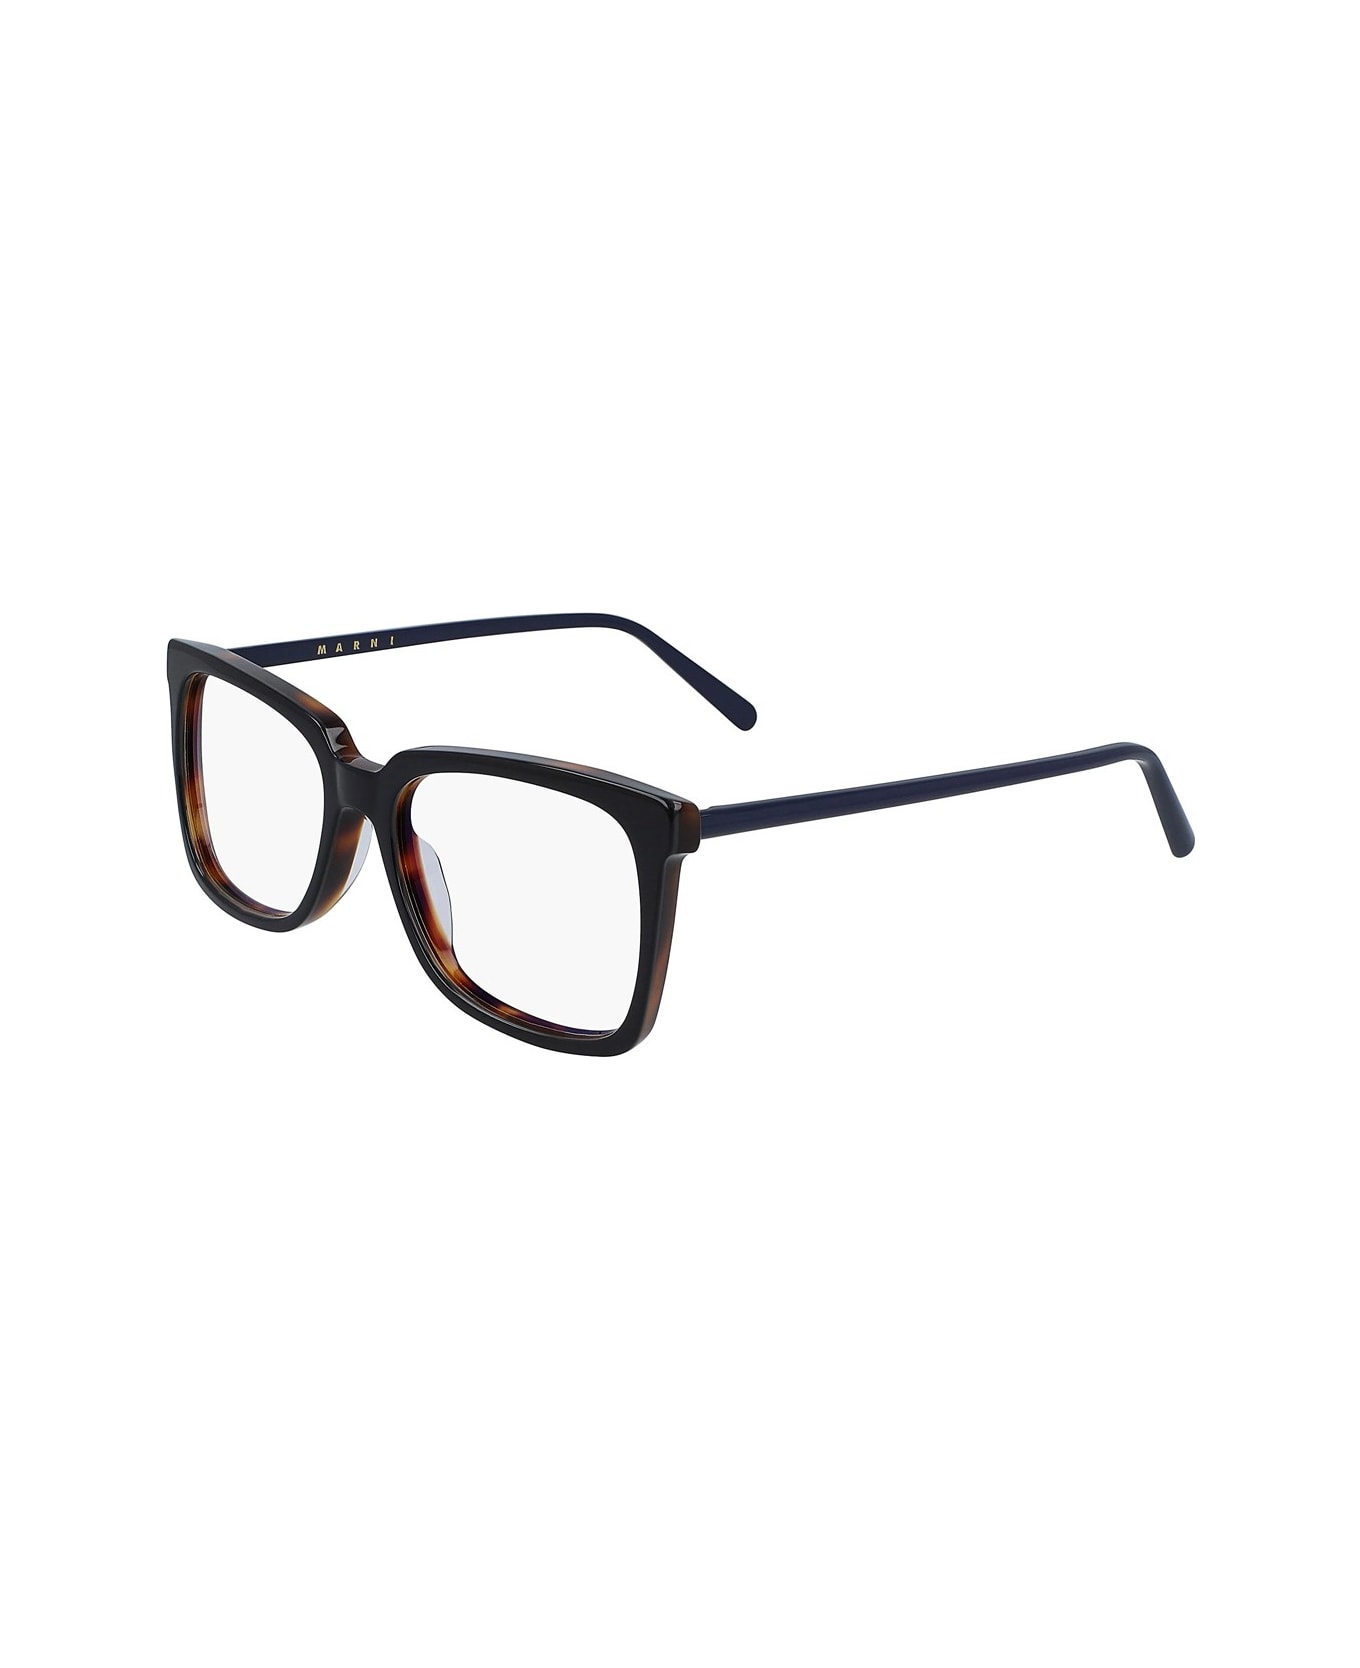 Marni Eyewear Me2630 Glasses - Marrone アイウェア